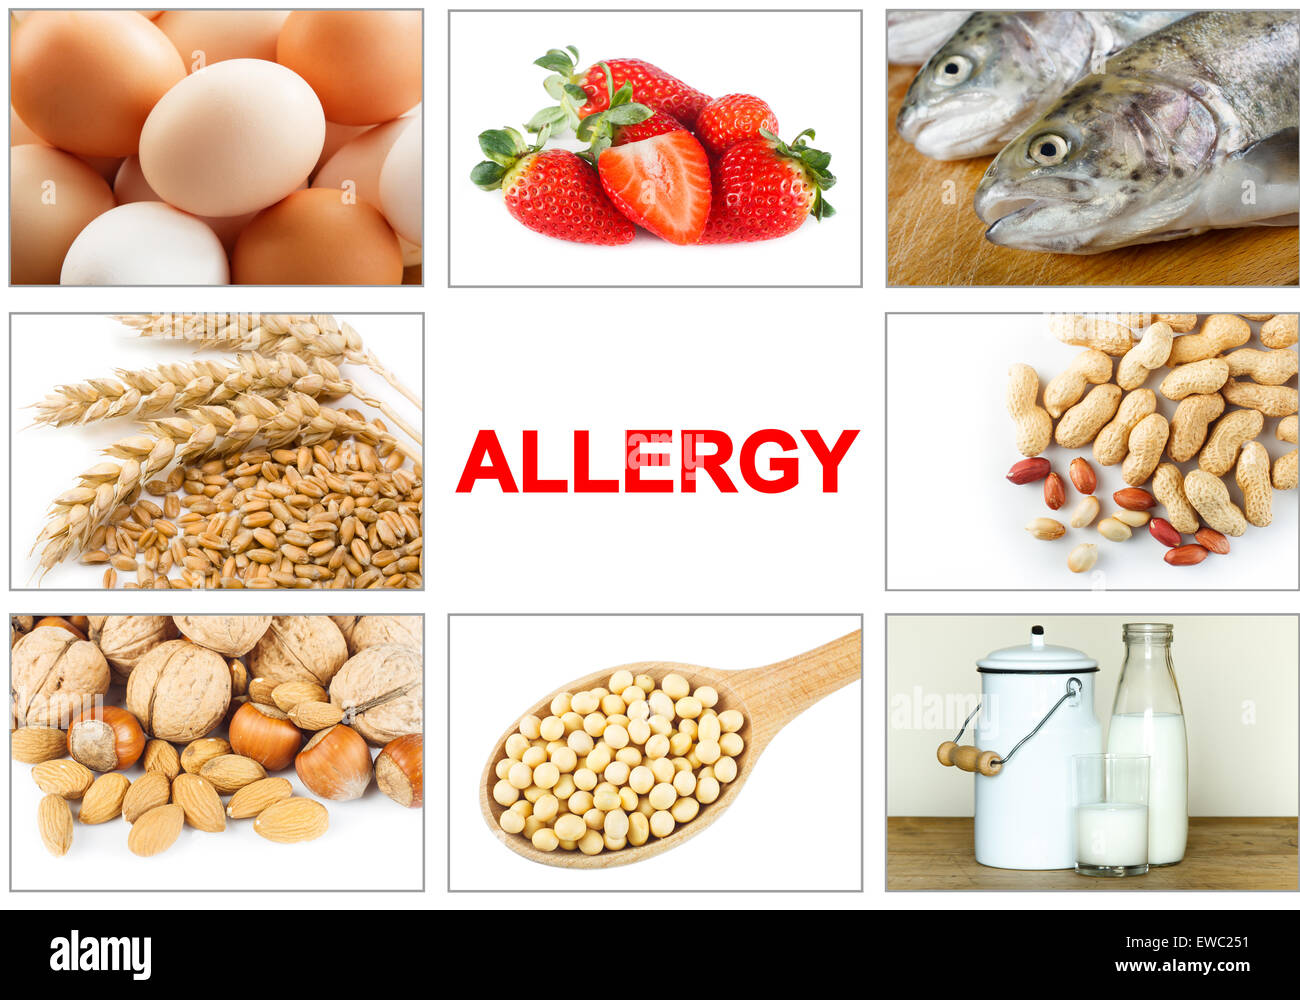 Allergie alimentaire concept. Allergènes alimentaires comme les œufs, lait, fruits, noix, arachide, de soja, de blé et de poissons. Texte 'gay' facile à enlever Banque D'Images